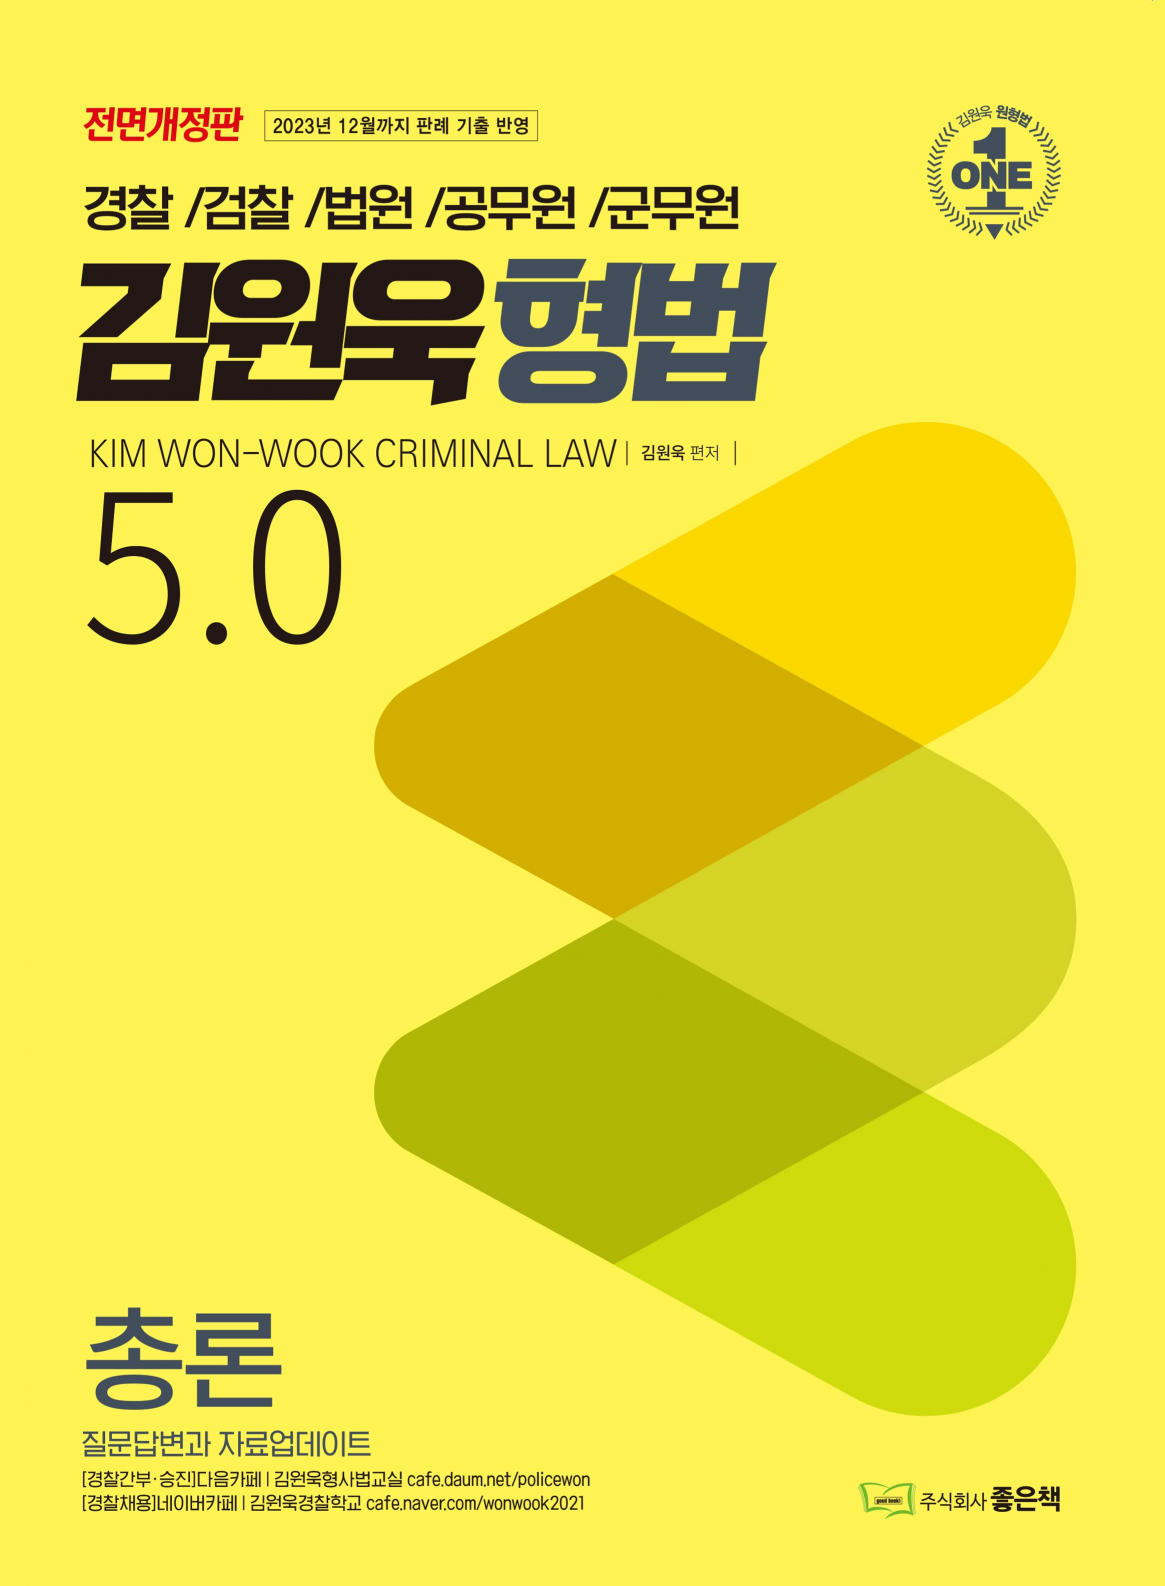 김원욱 형법 5.0